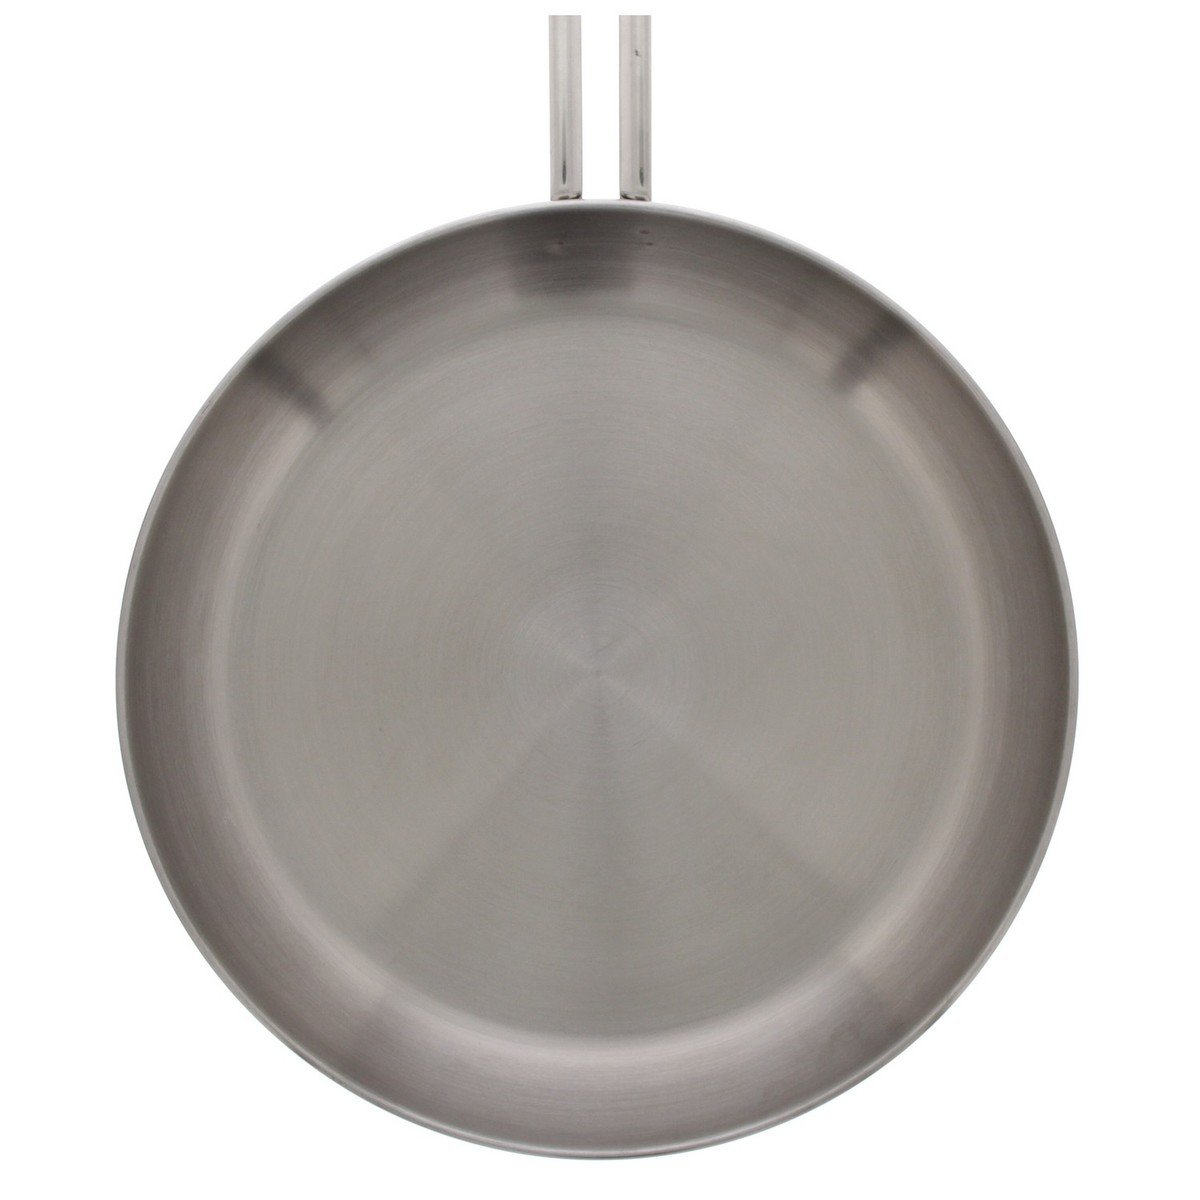 Prestige Infinity Stainless Steel Fry Pan, 20 cm, 77366